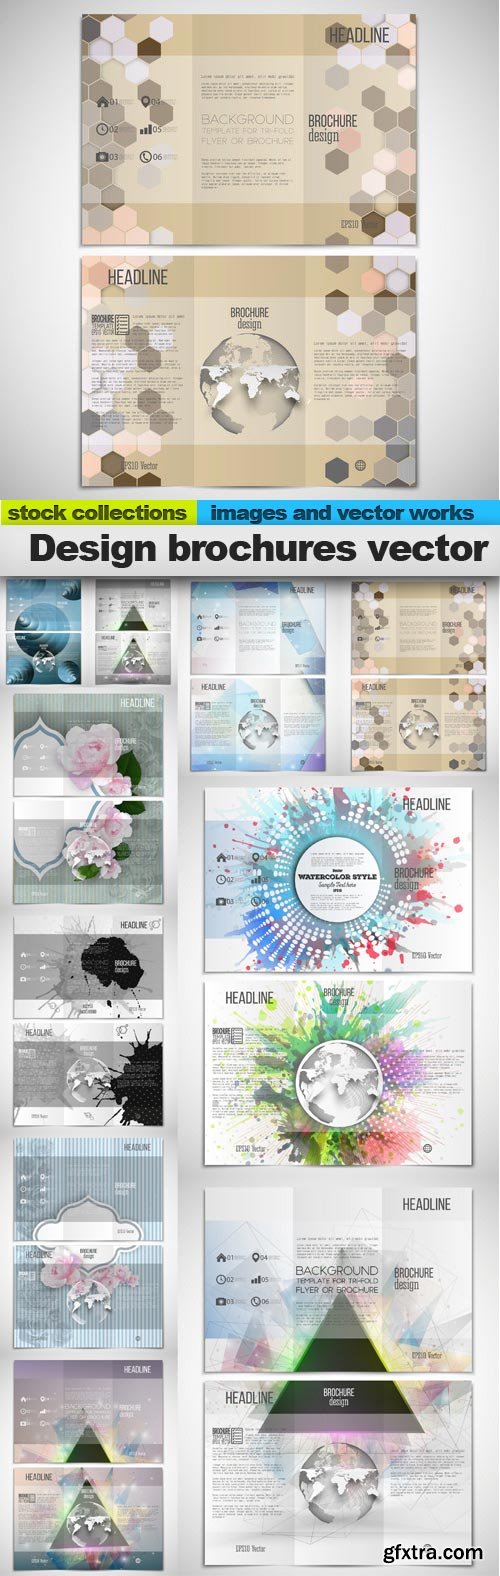 Design brochures vector, 10 x EPS